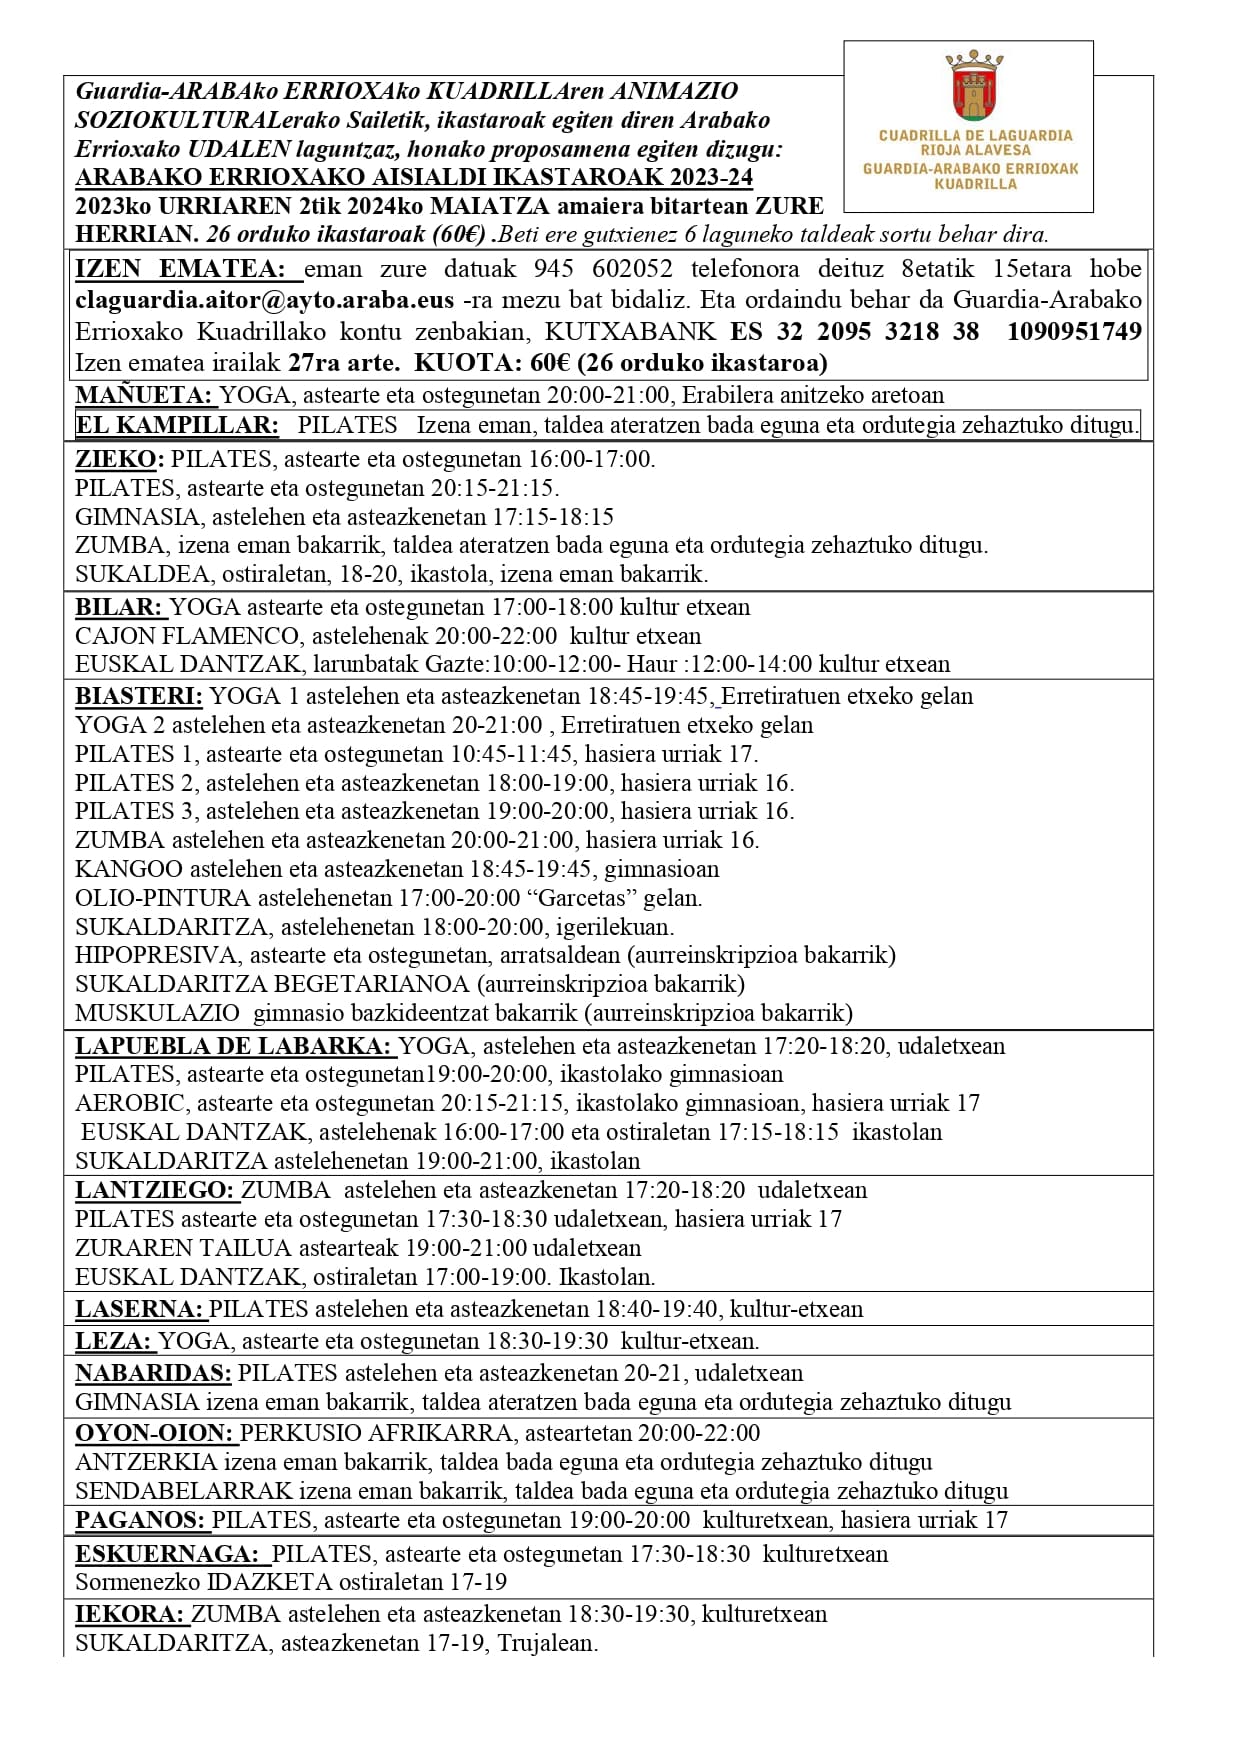 CURSOS DE OCIO DE RIOJA ALAVESA 2023 2024 1 page 0002